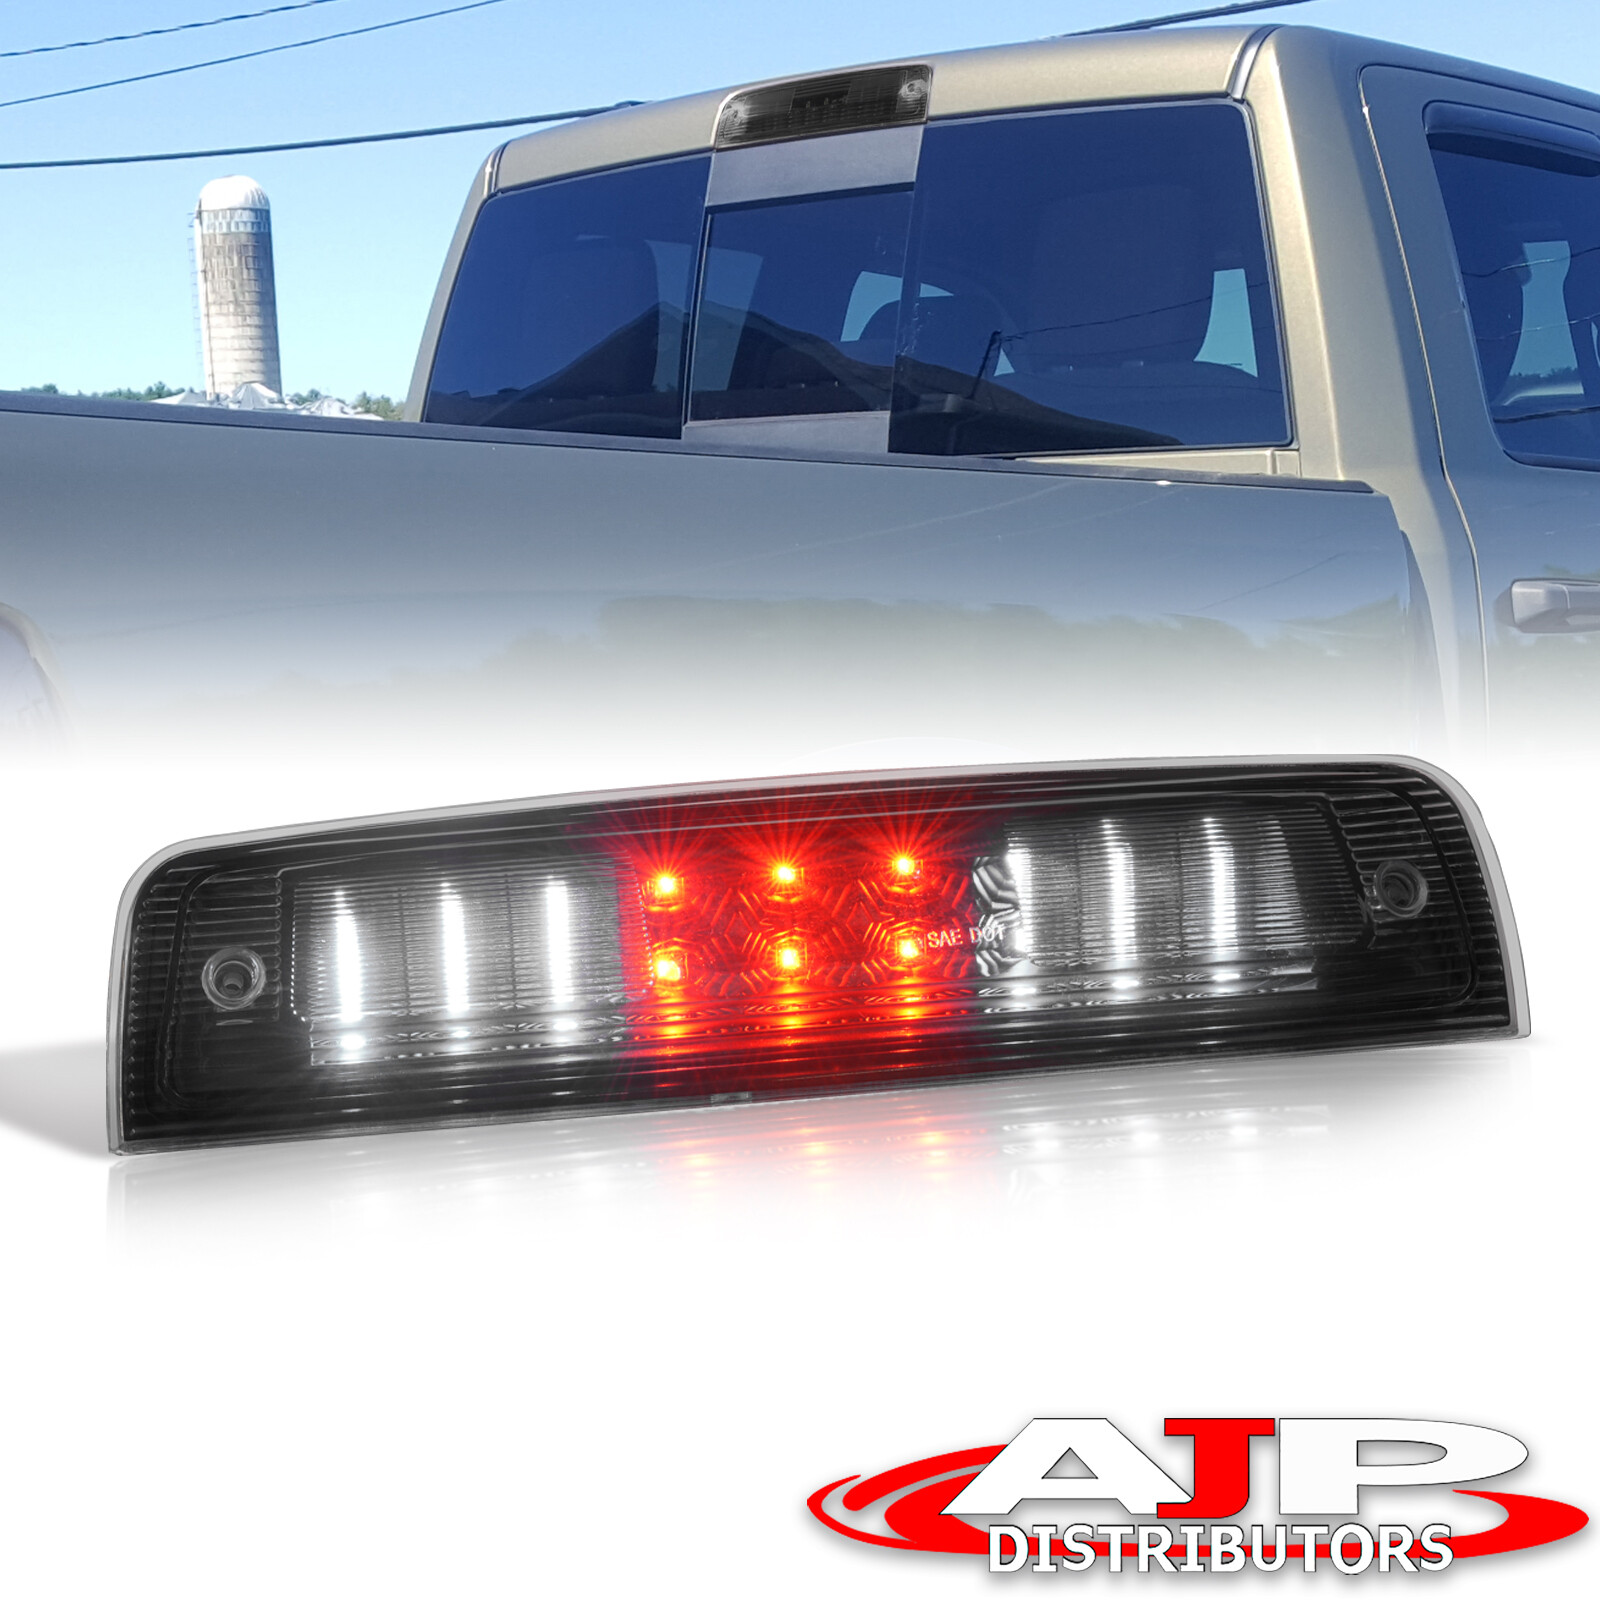 Black LED Cargo 3RD Brake Light Stop Lamp For 2009-2019 Dodge Ram 1500 Classic | eBay 2019 Ram 1500 Led 3rd Brake Light